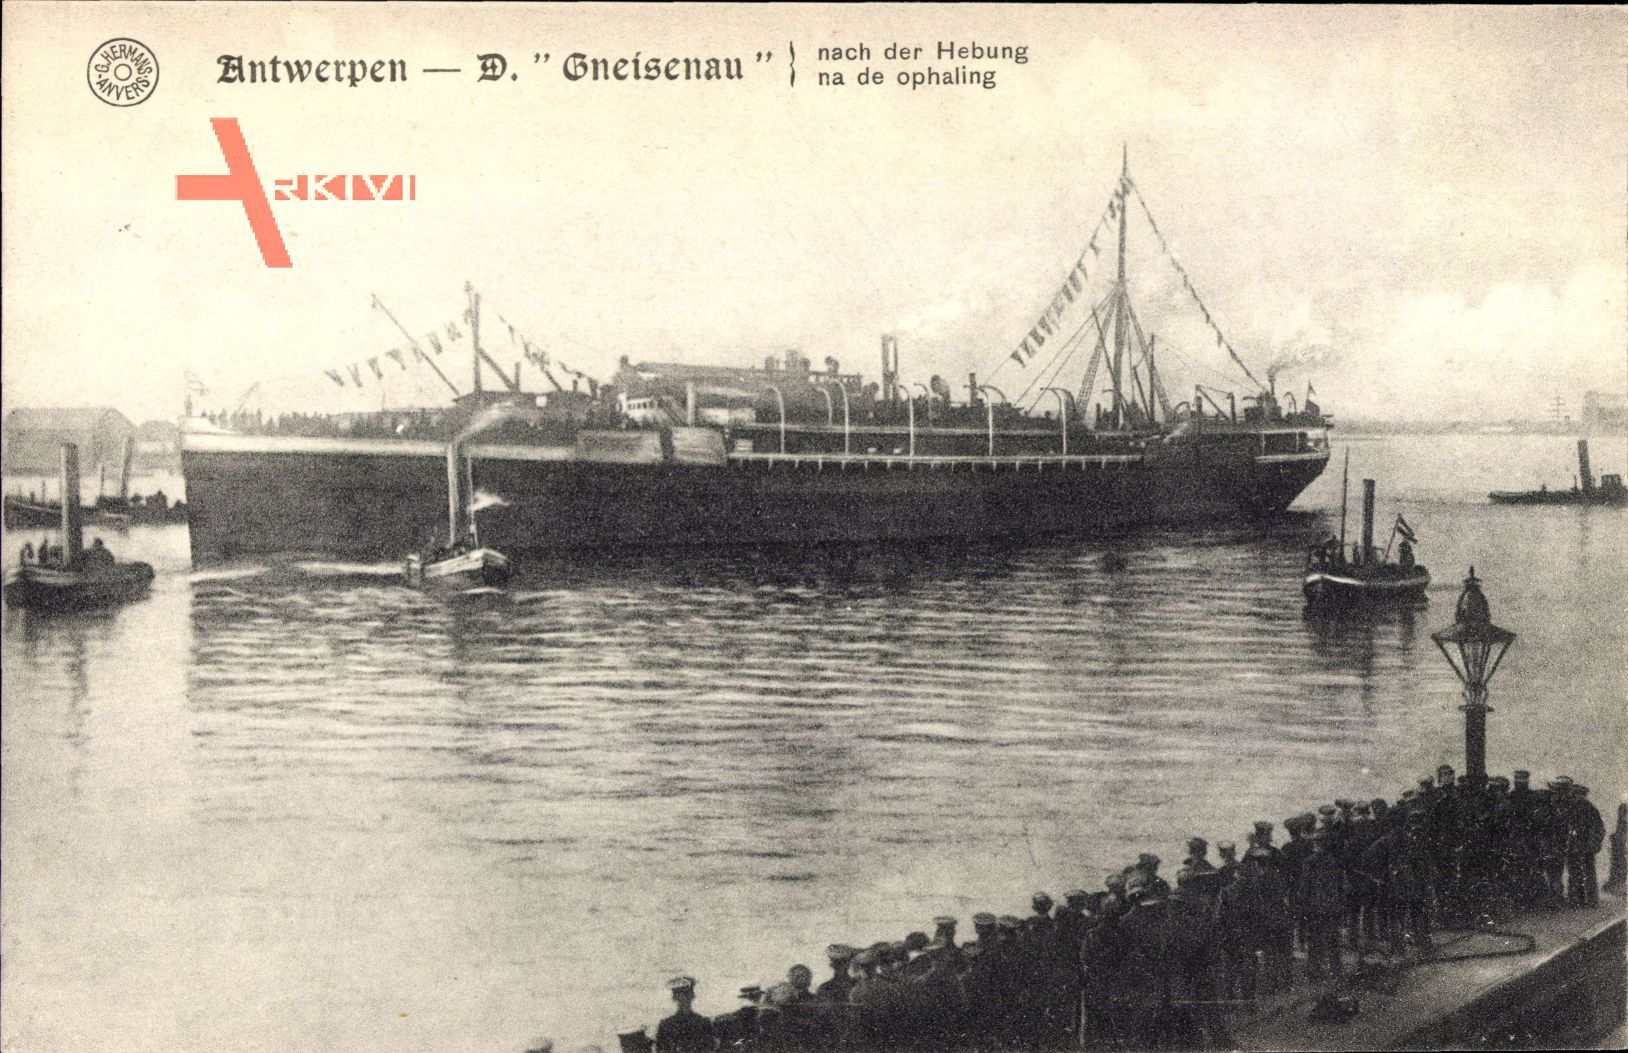 Antwerpener Hafen, Dampfschiff Gneisenau, Norddeutscher Lloyd Bremen